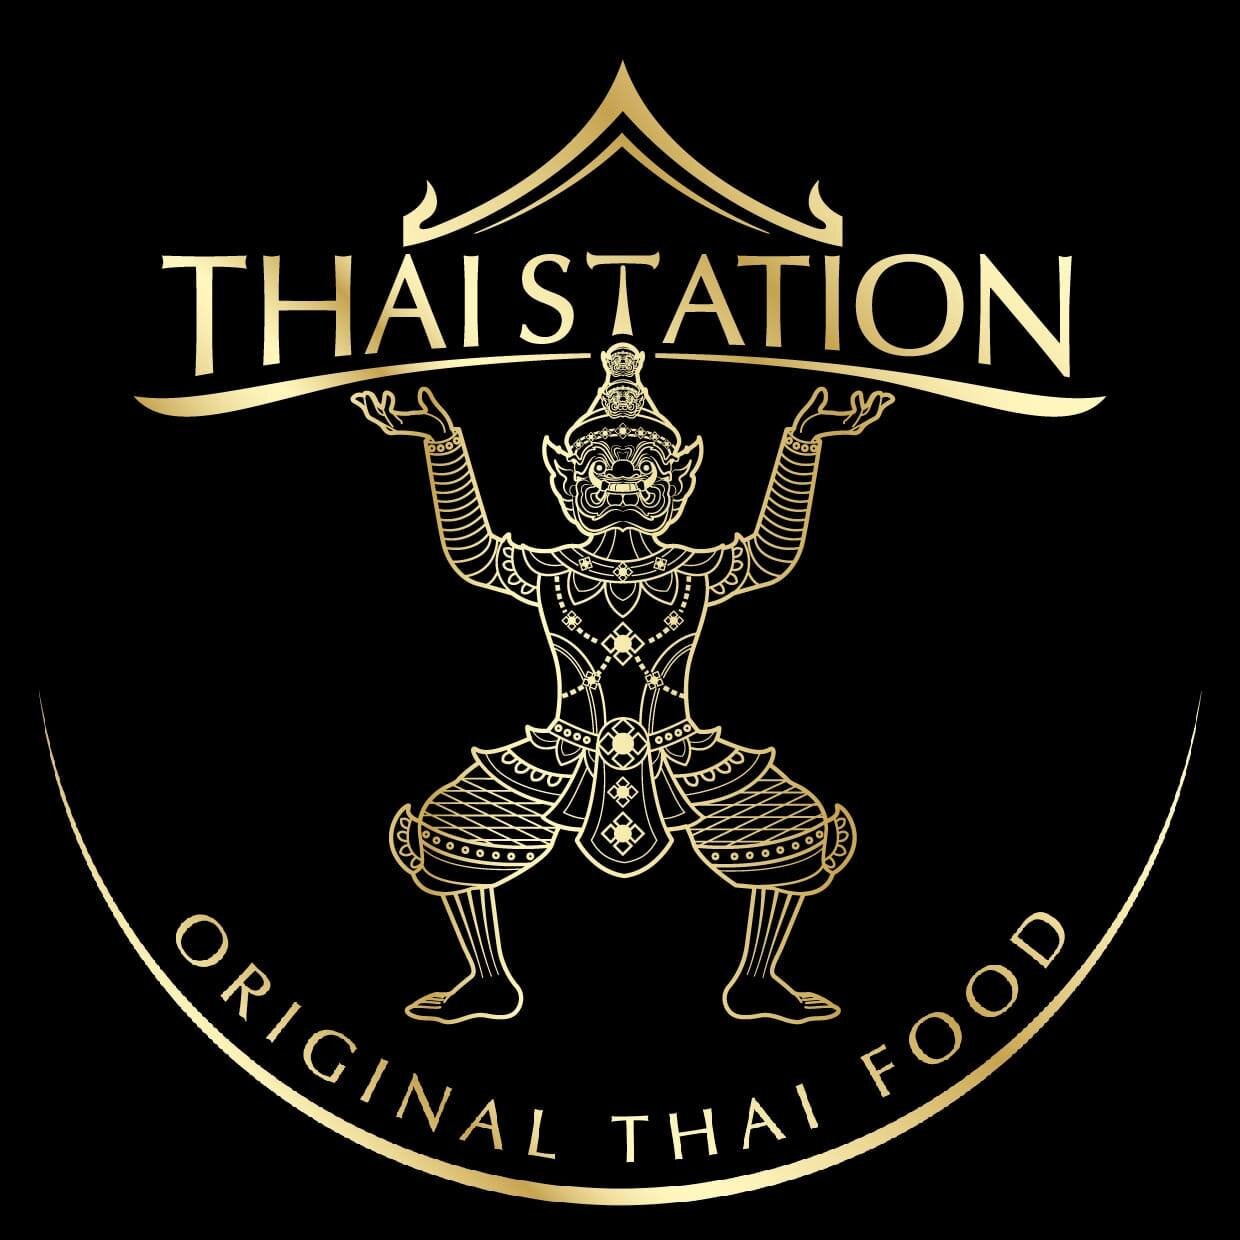 Thai Station